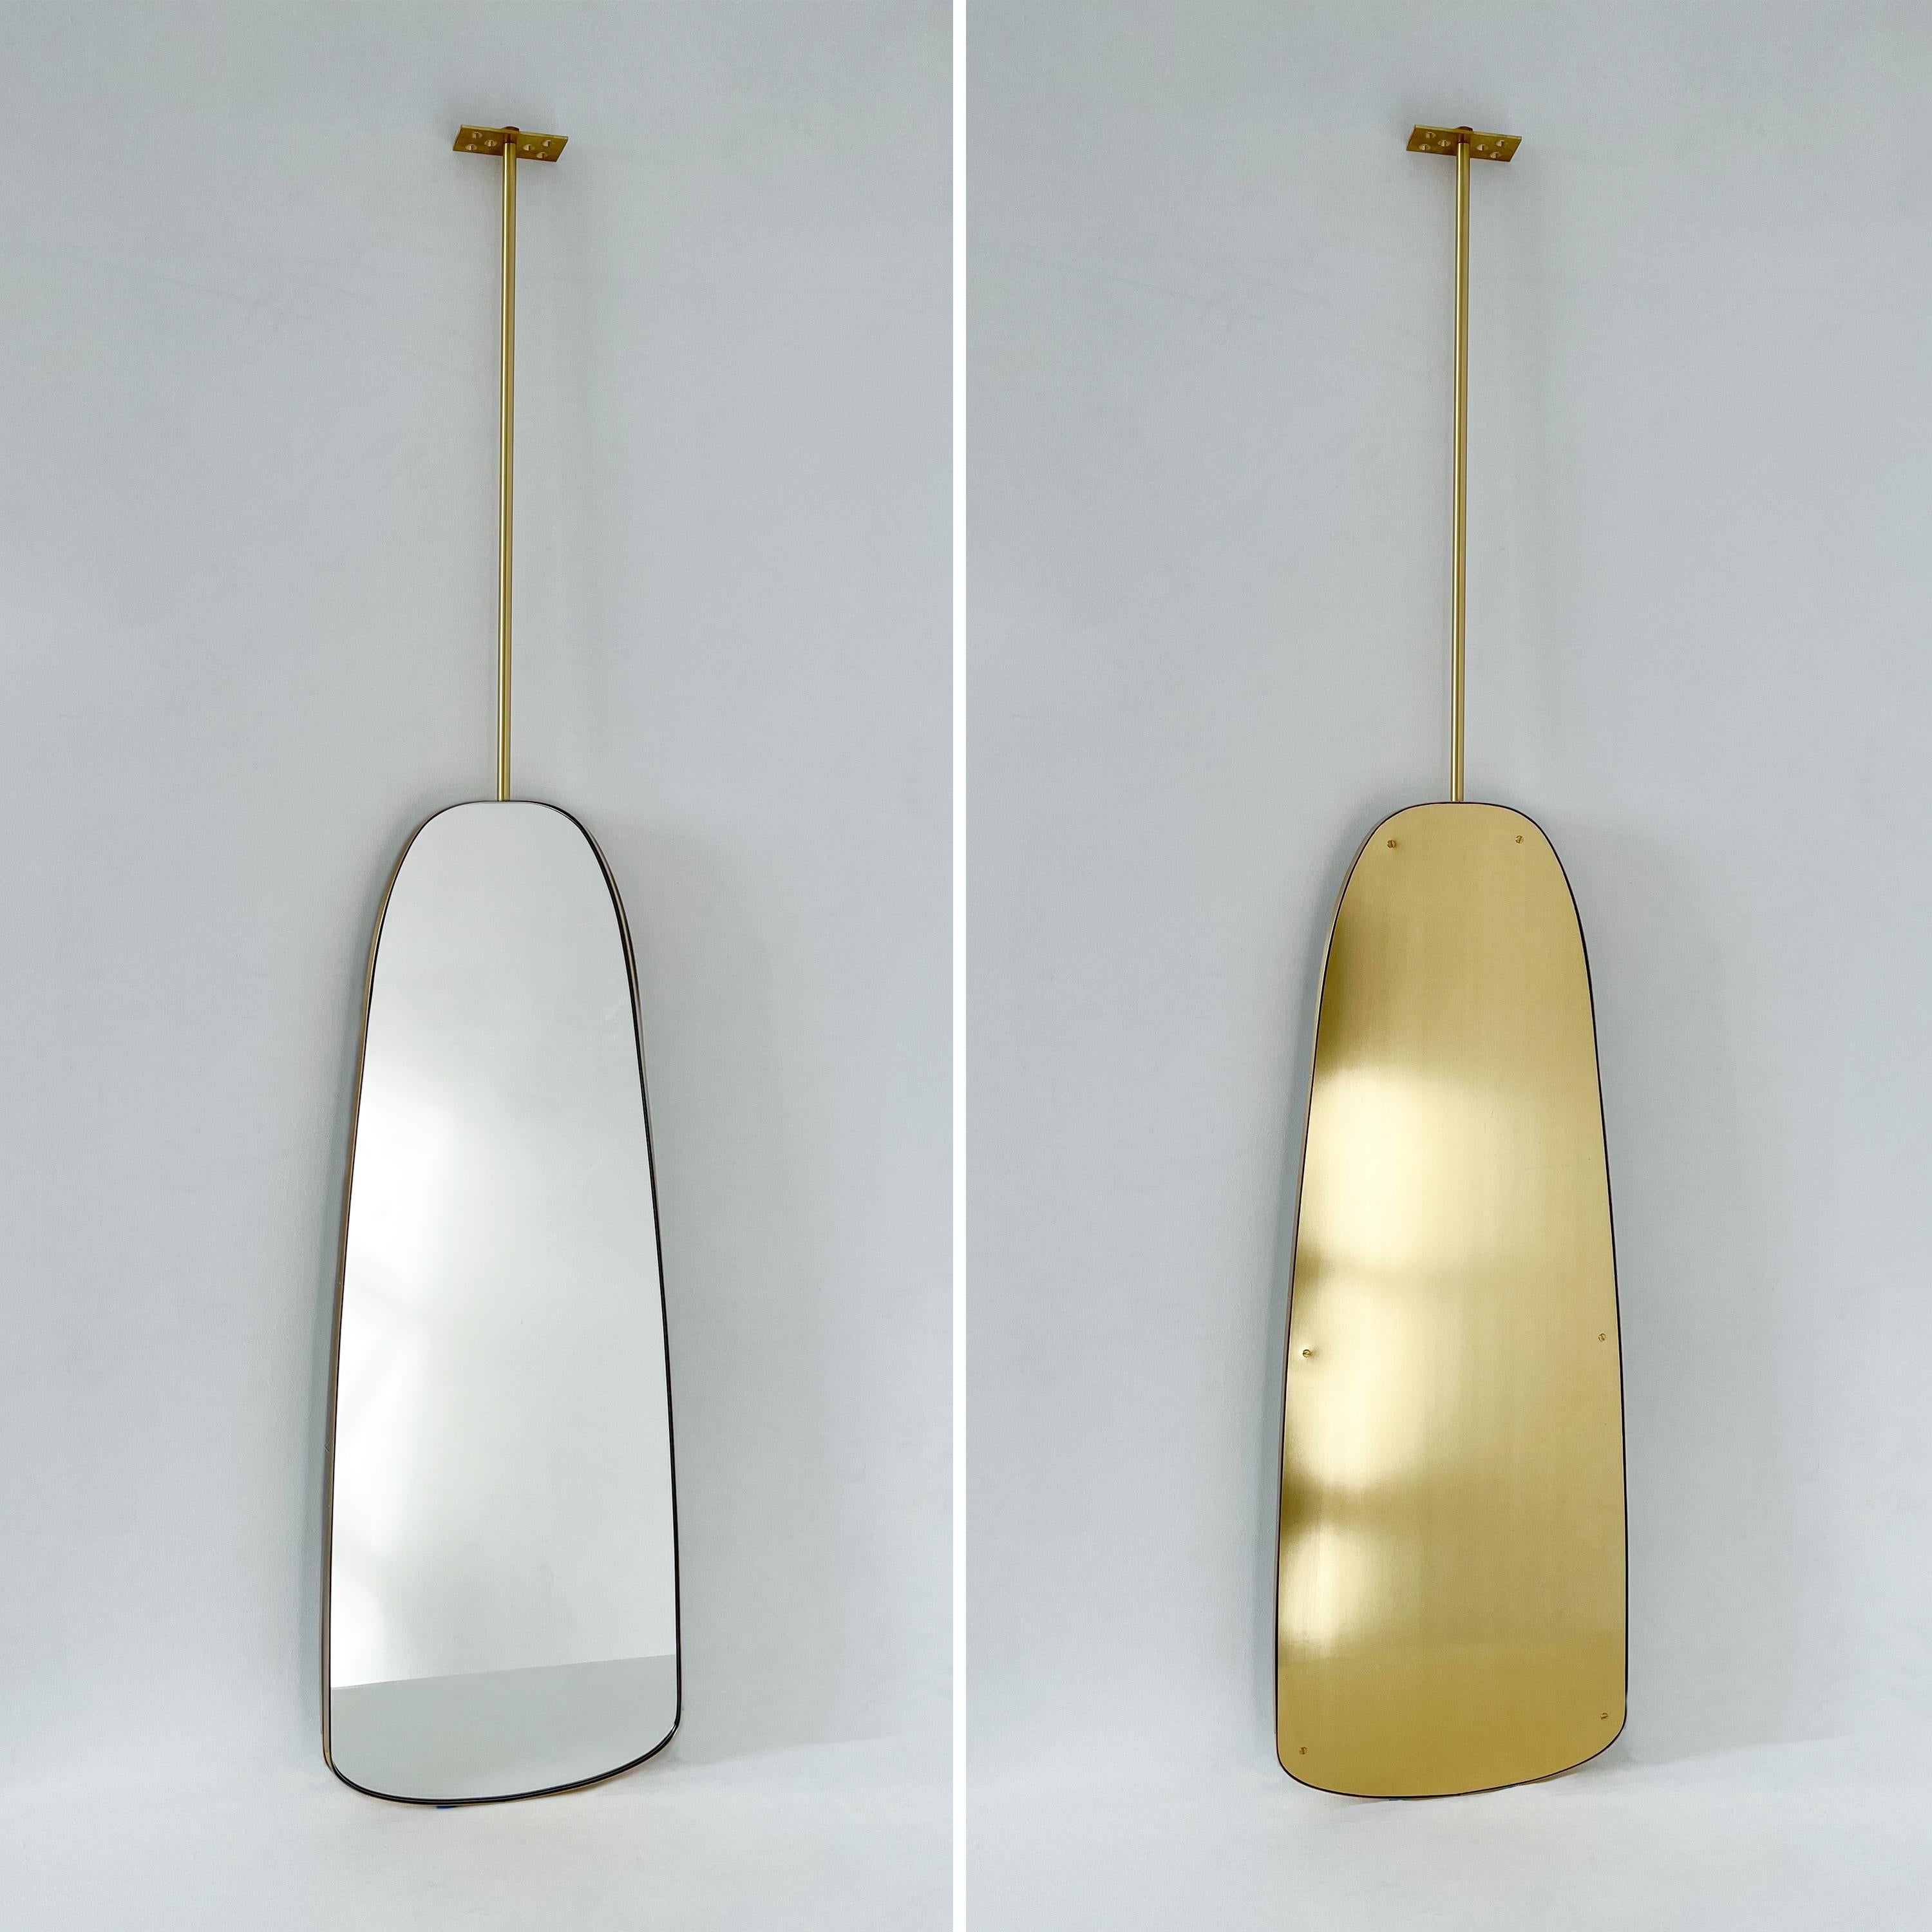 Miroir de forme organique suspendu au plafond, d'inspiration Art déco, avec un élégant cadre en laiton massif brossé.

Dimensions du miroir : 360 mm (14,5